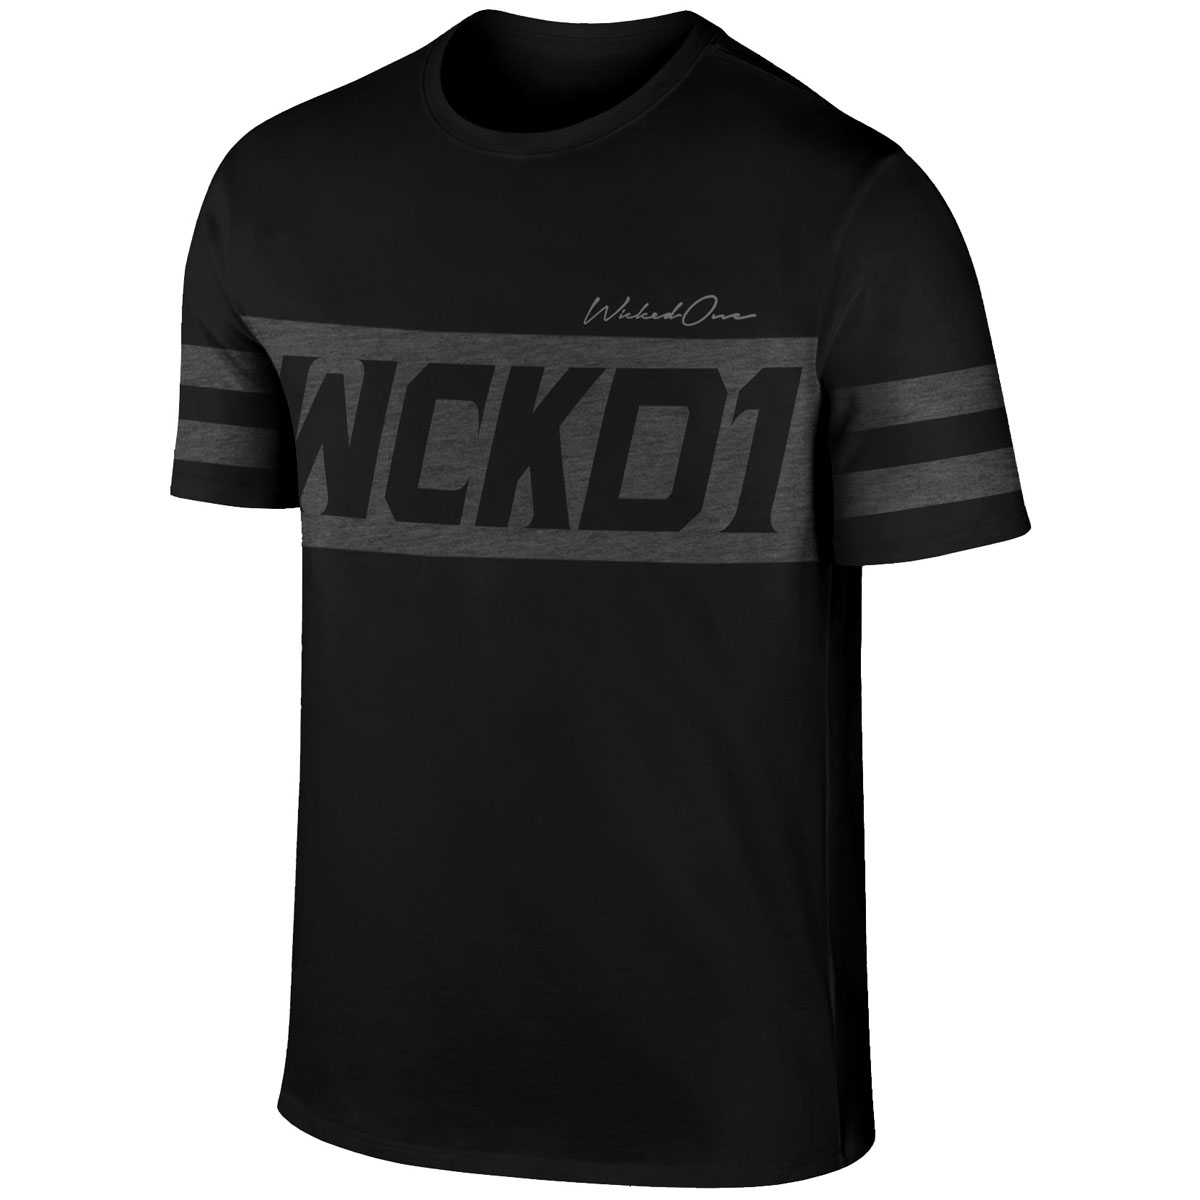 Wicked One T-Shirt, Tracker, schwarz, S